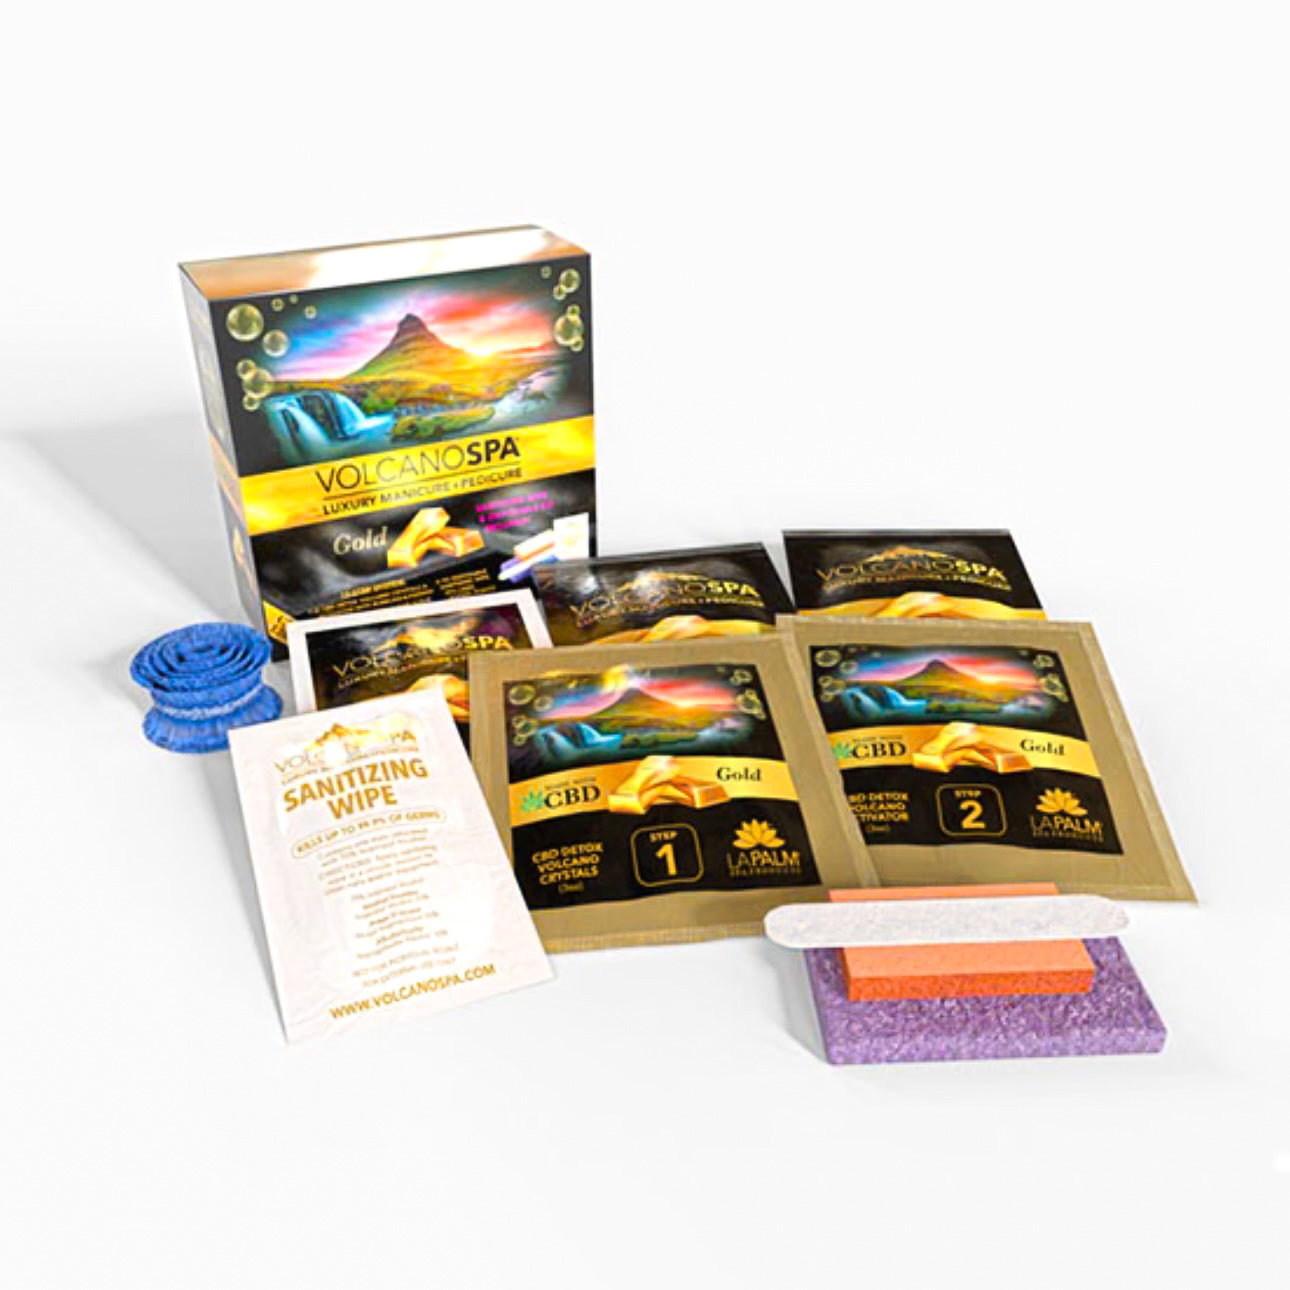 Volcano Spa CBD+ Edition - Gold